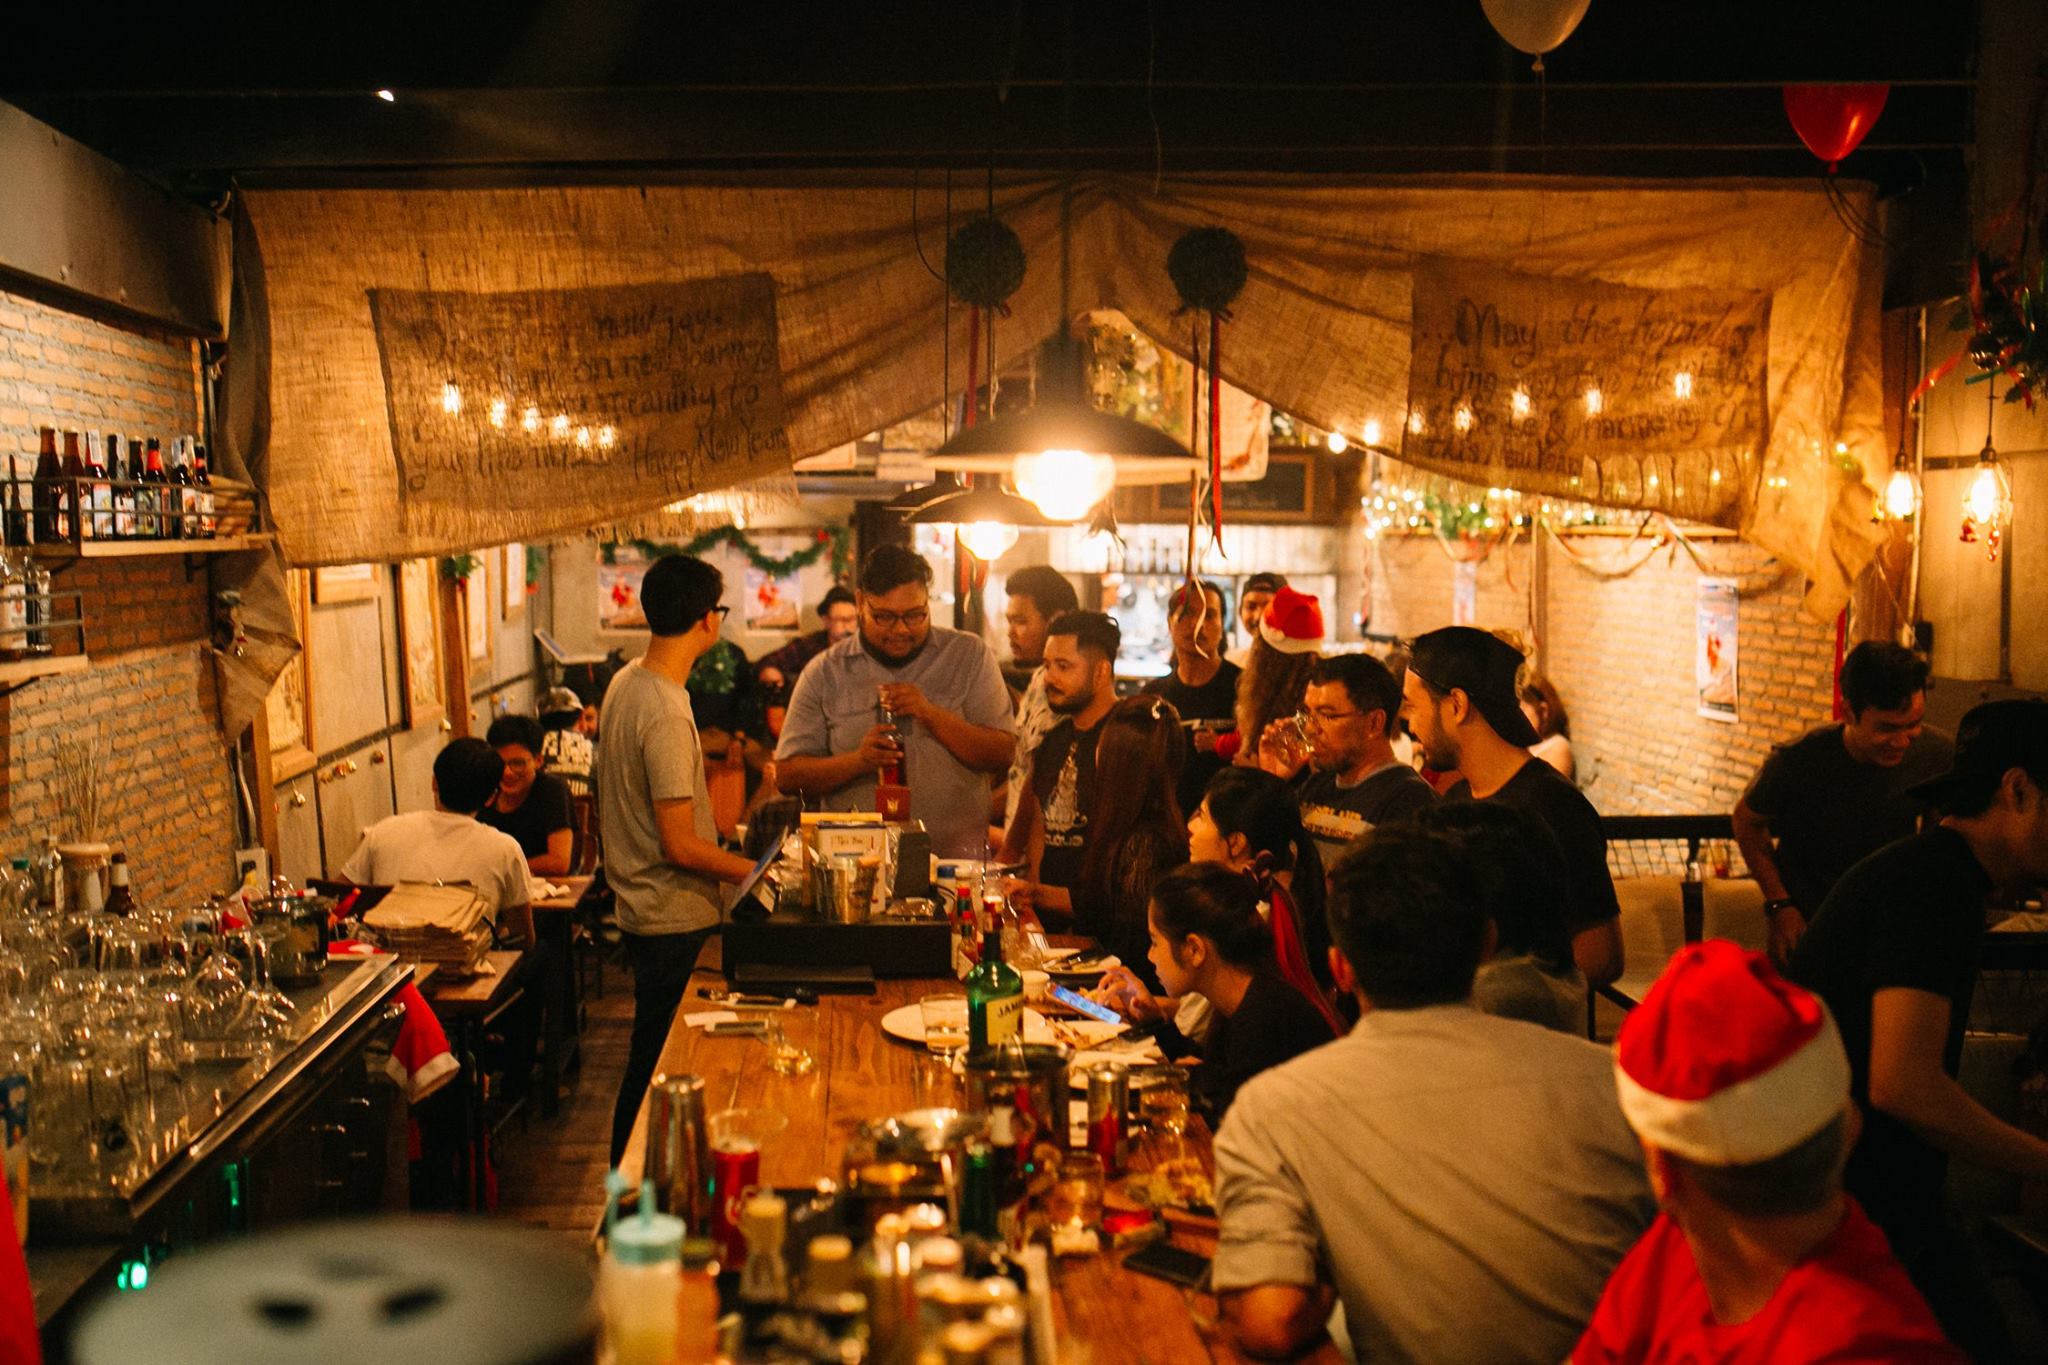 โฮมเลสบาร์ แอนด์ กริลล์ (Homeless Bar & Grill) : สงขลา (Songkhla)